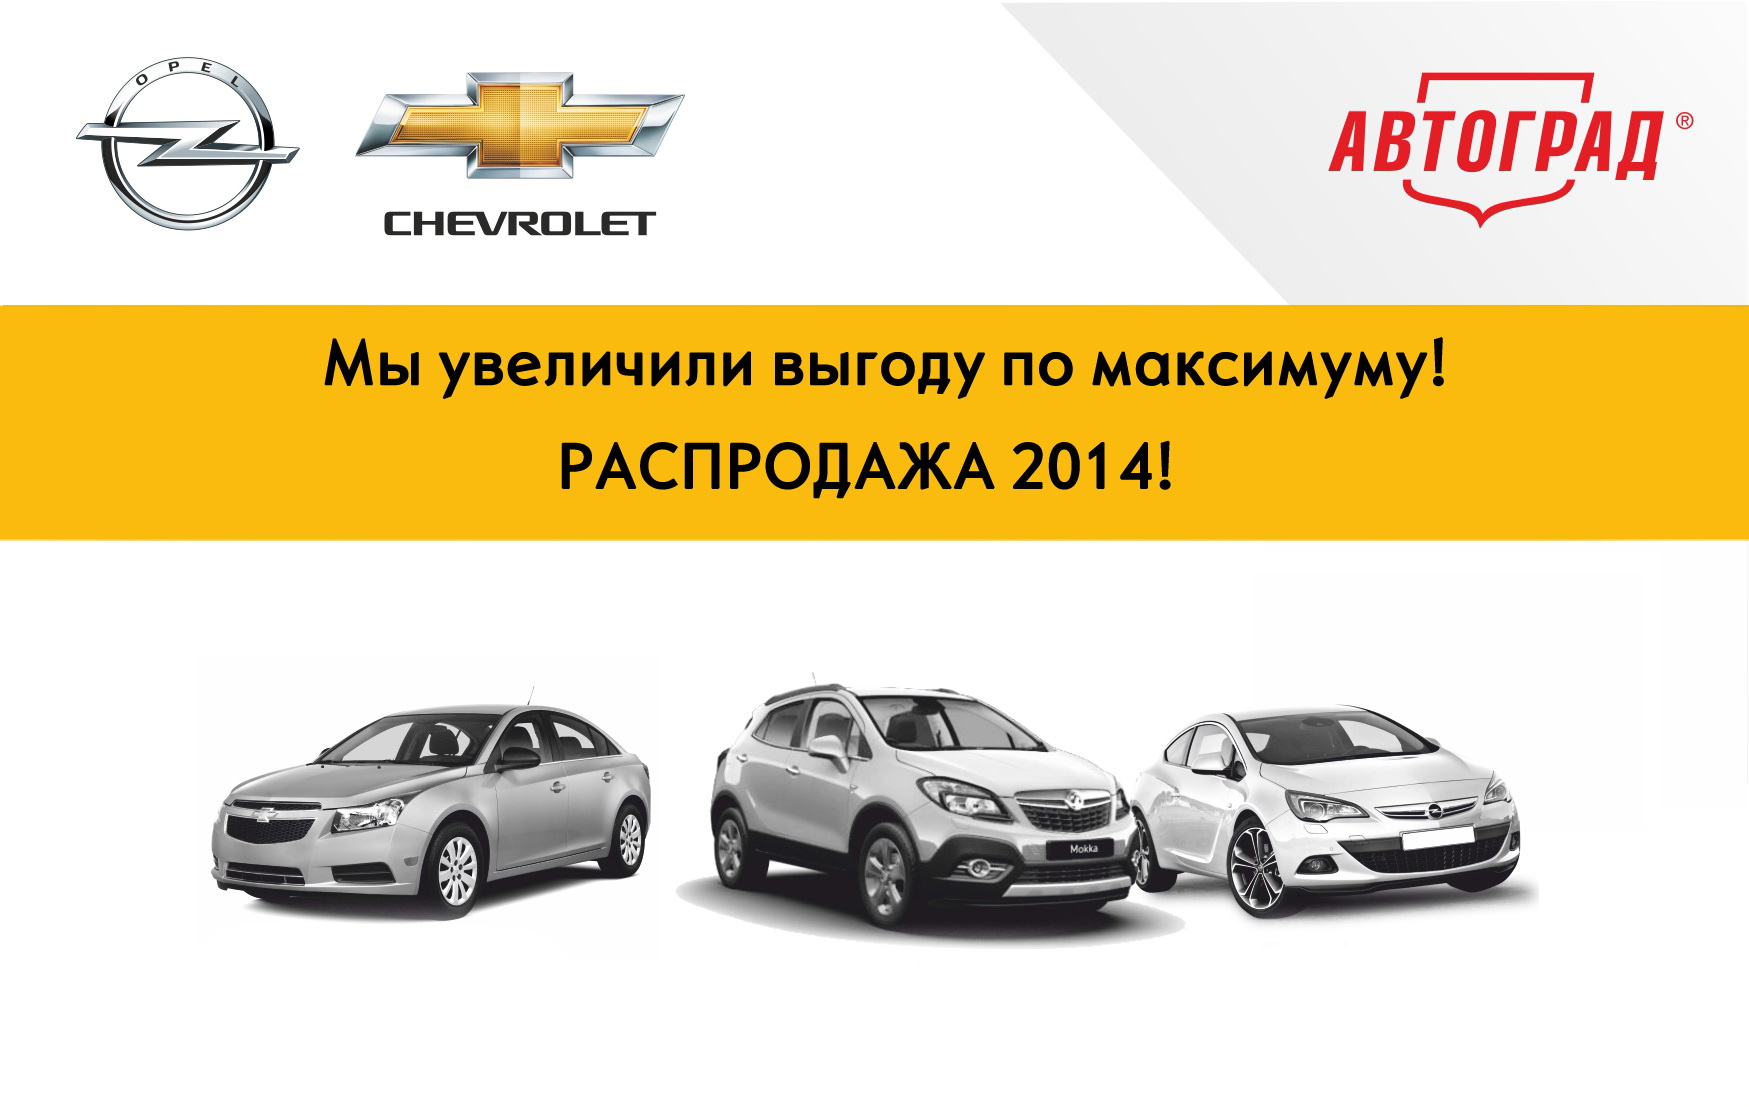 Распродажа автомобилей Opel и Chevrolet в Автограде!